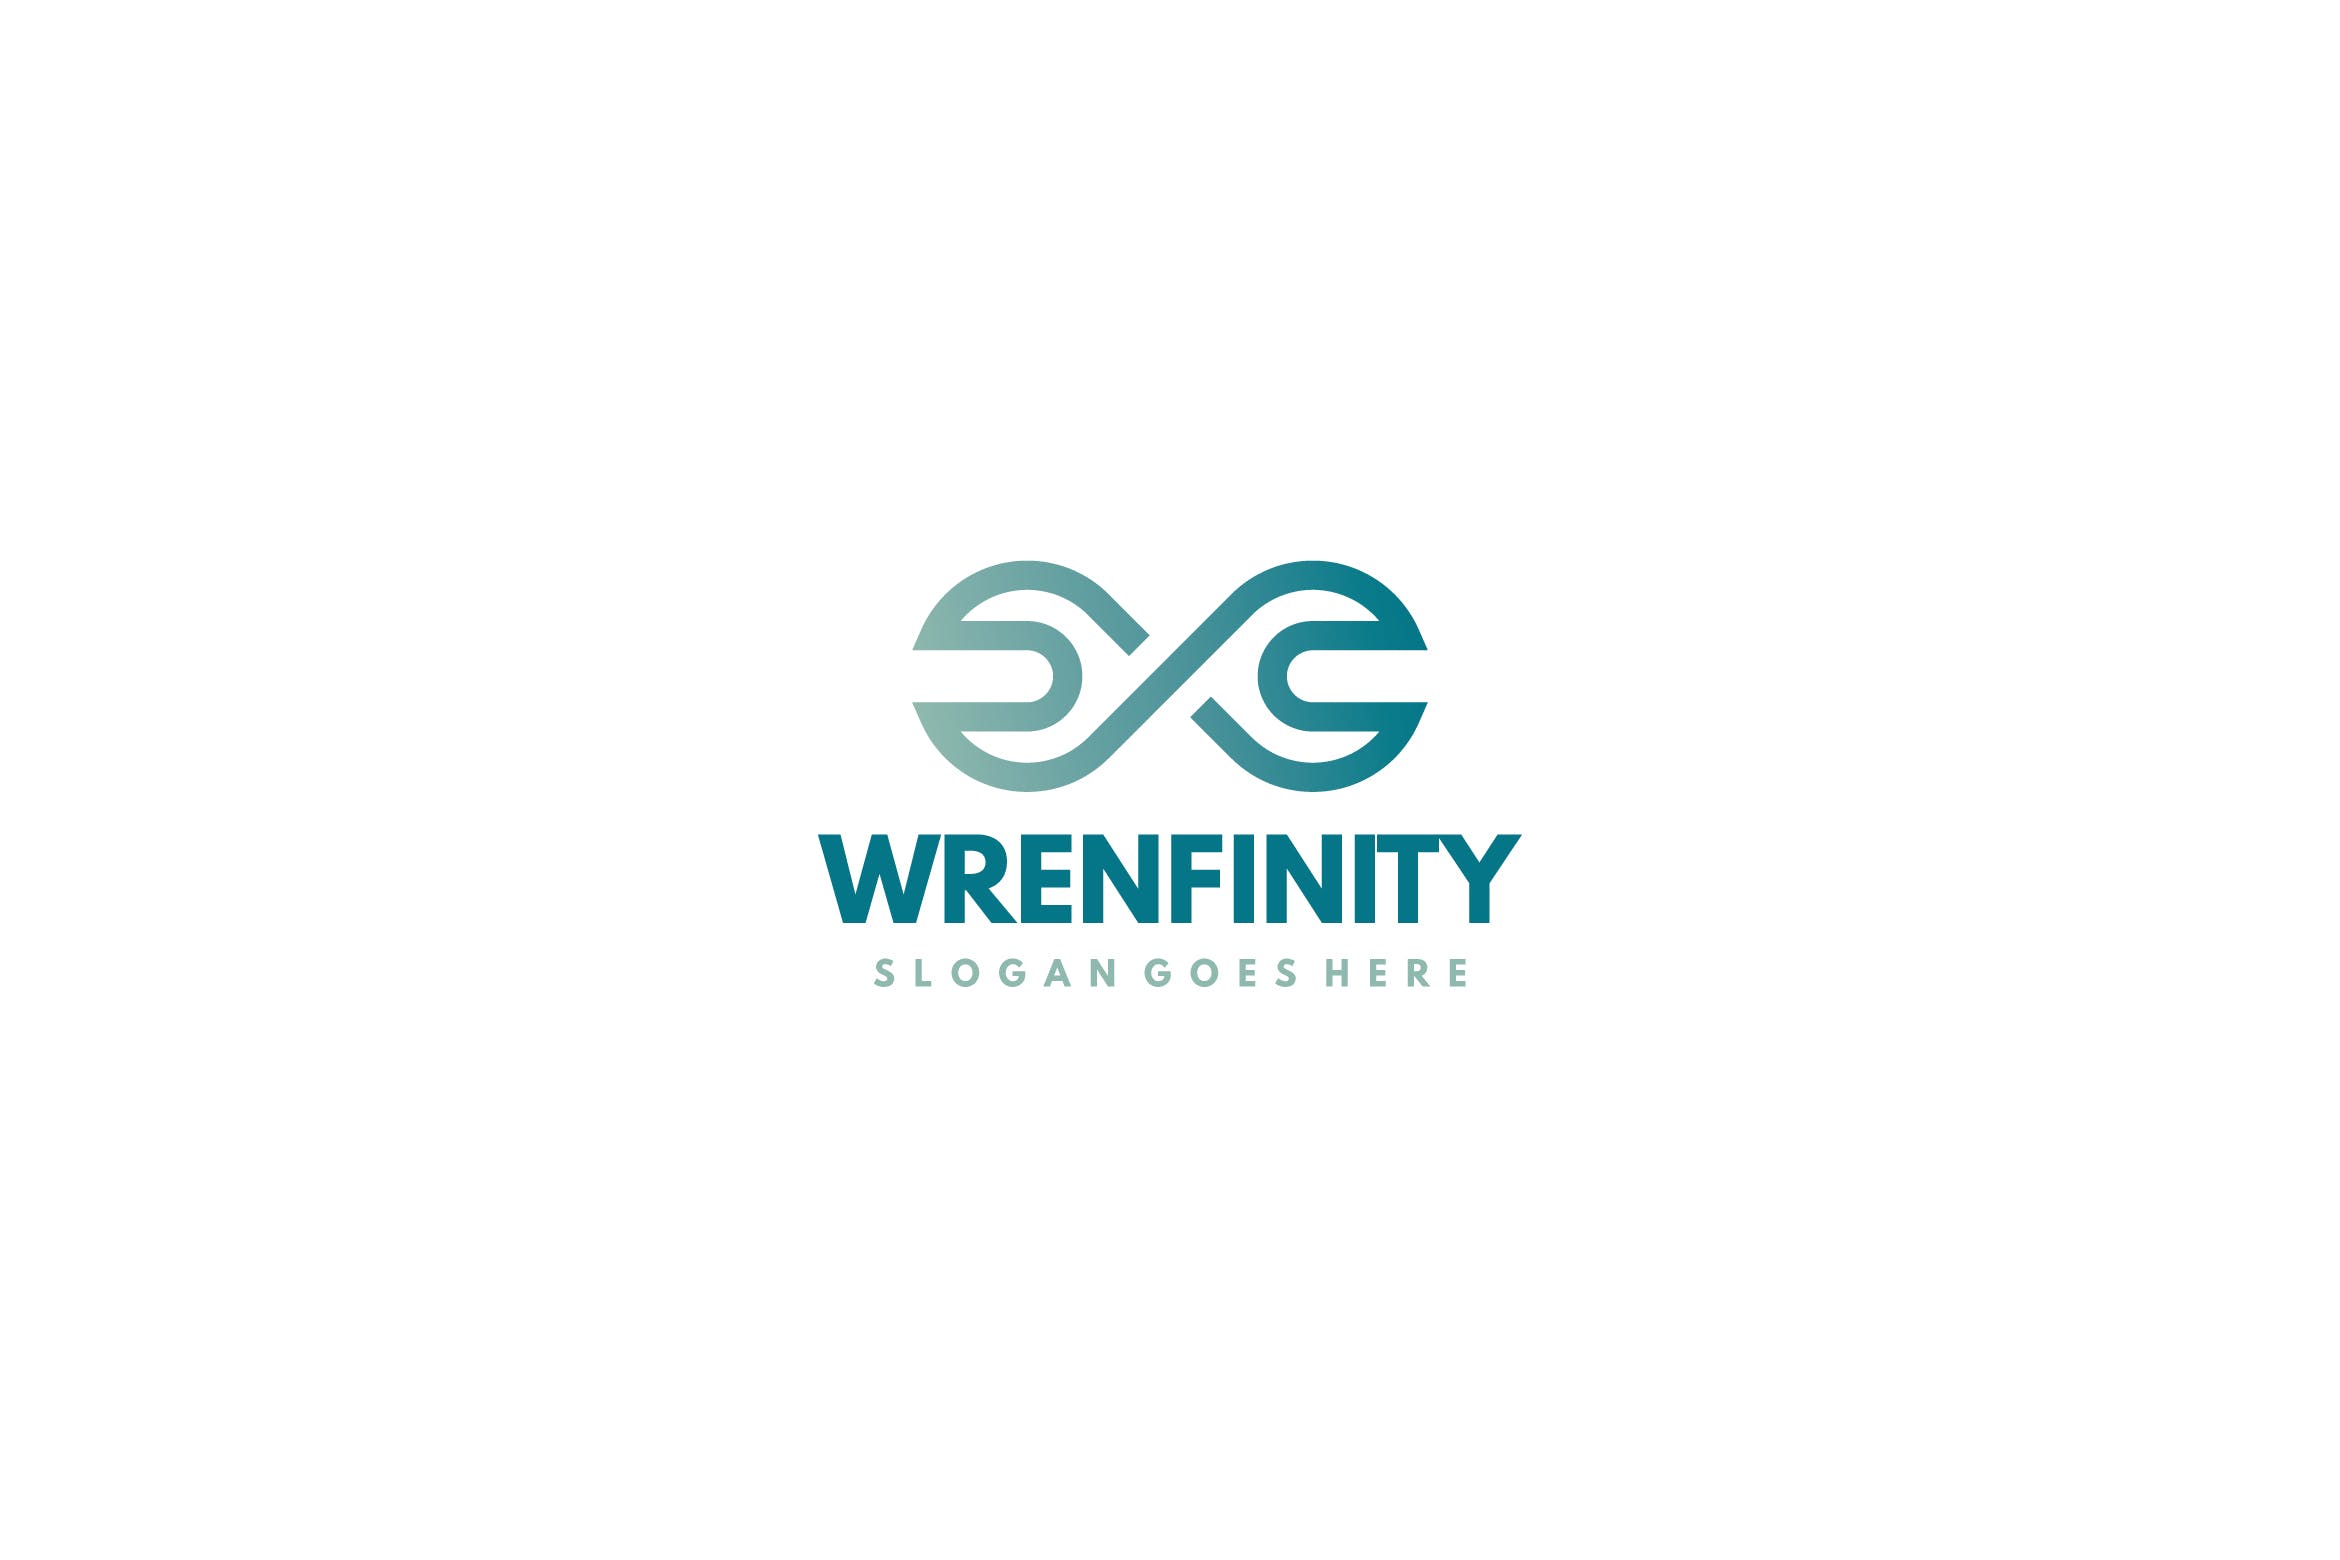 工具品牌汽修行业适用扳手无限图形标志Logo设计第一素材精选模板 Wrench Infinity Logo插图